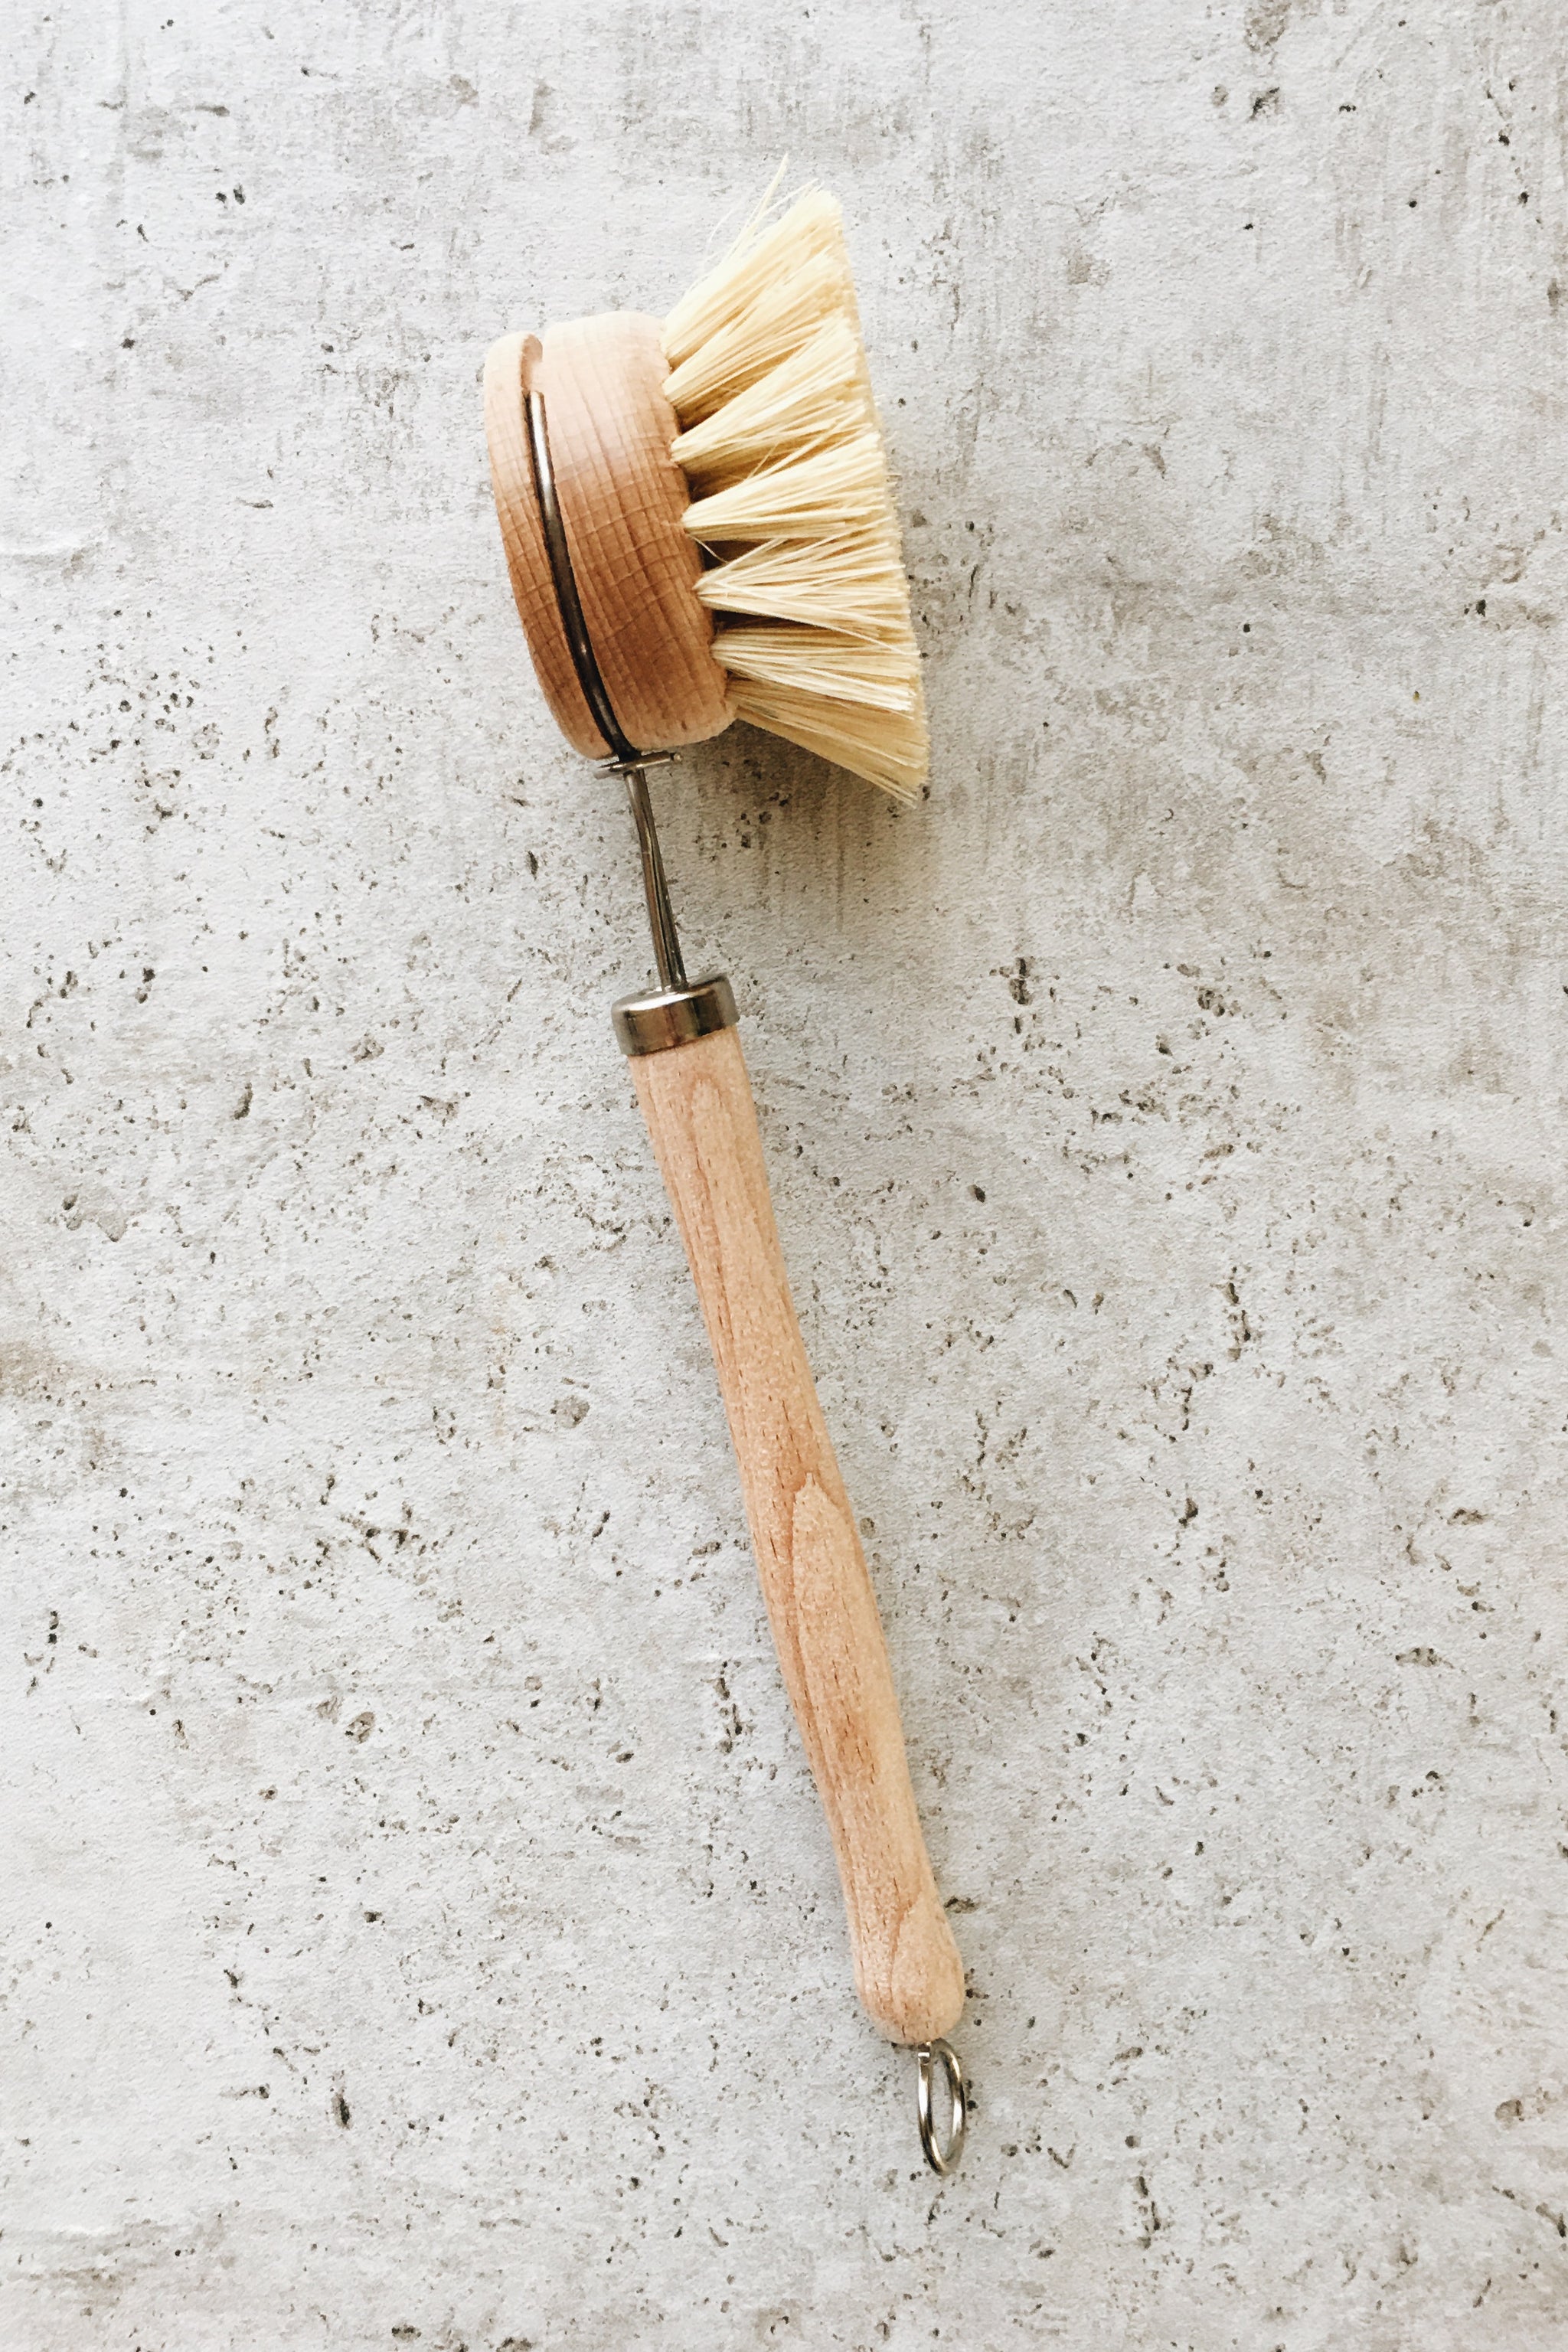 Dish Brush W/ Stiff Memory Bristles - Natural Wood Handle